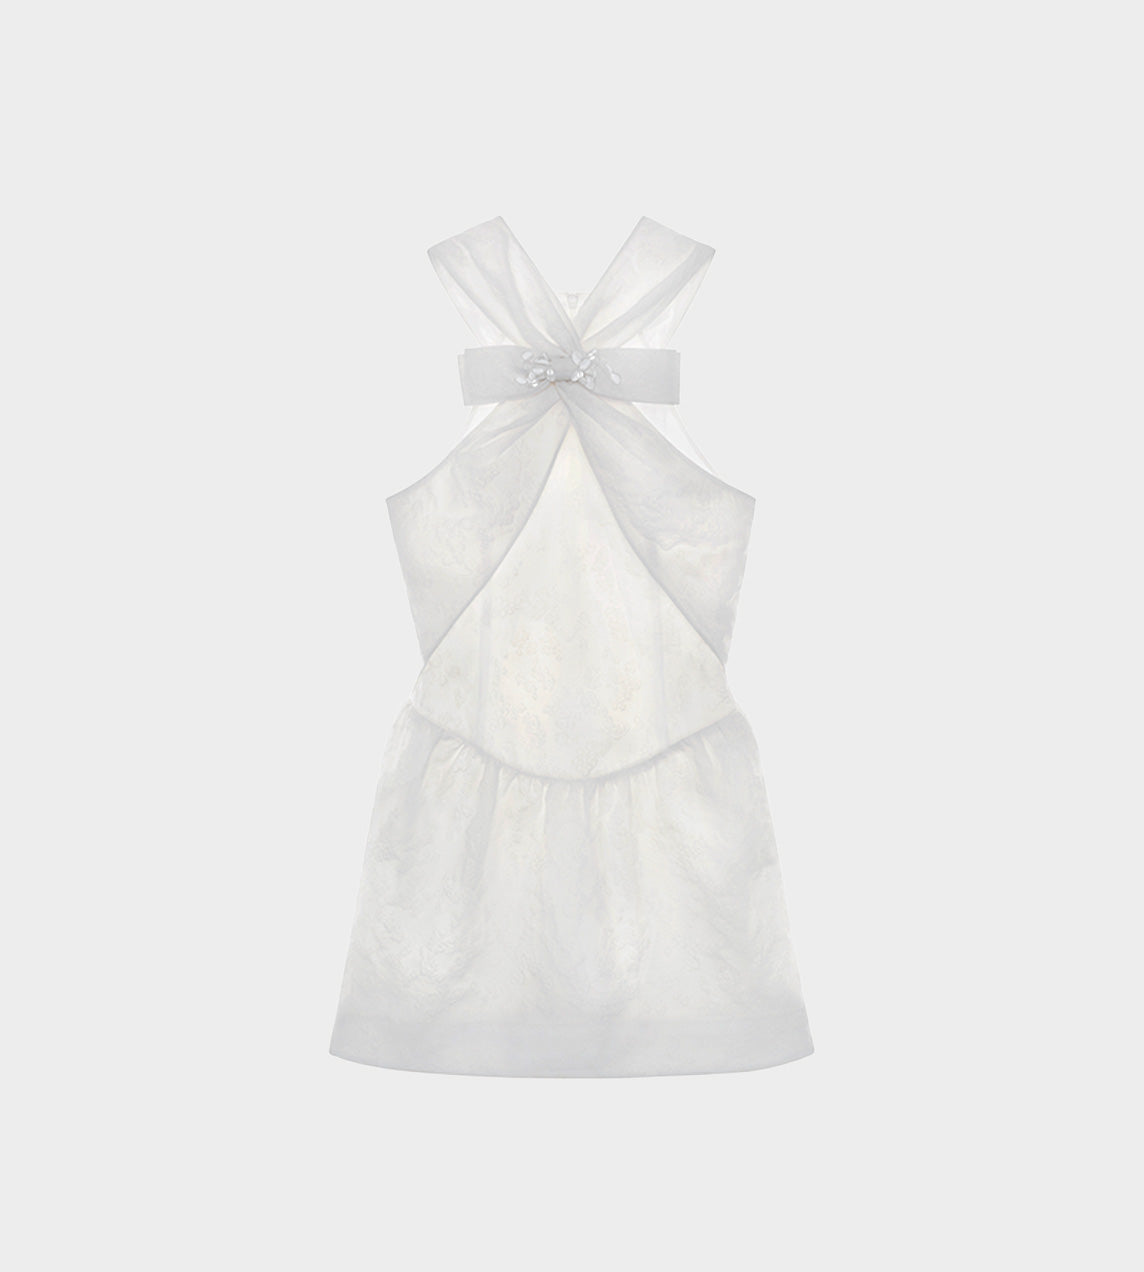 ShuShu/Tong - Crossover Bow Short Dress White